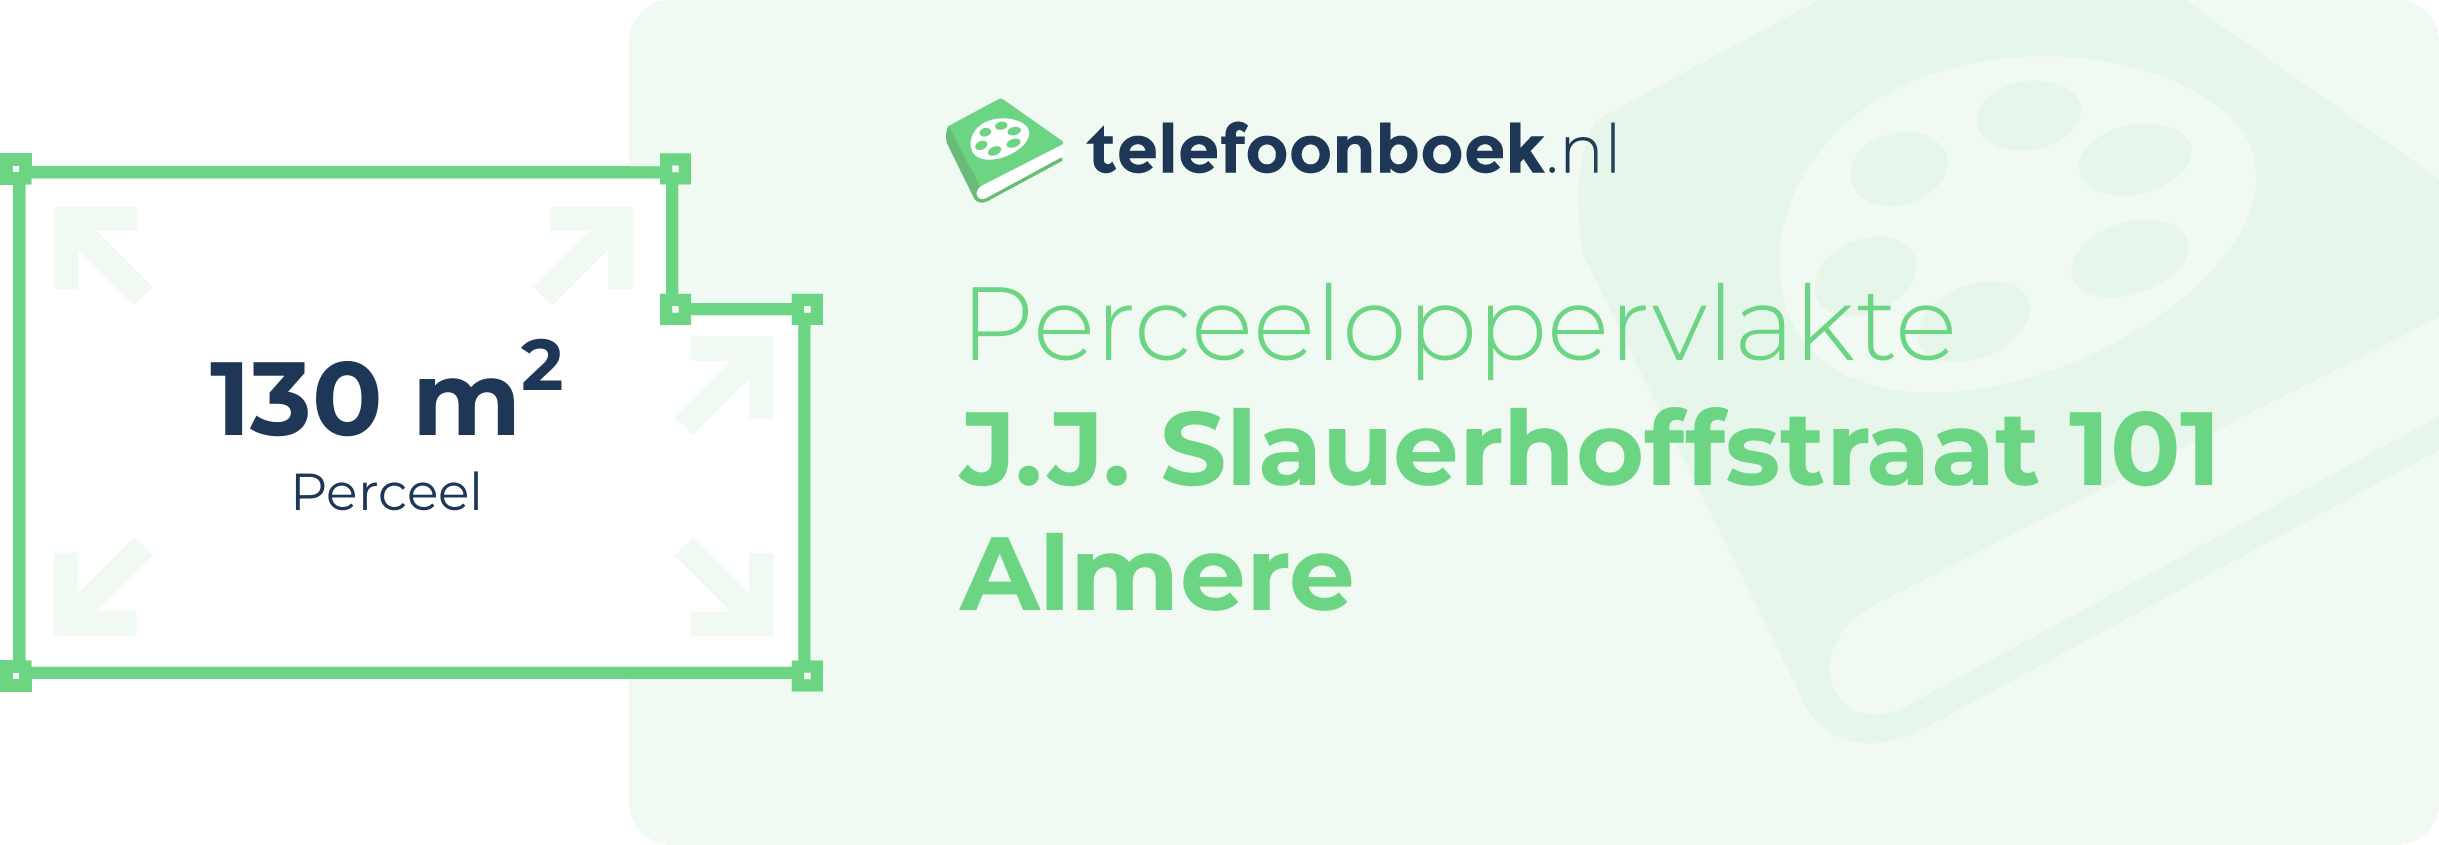 Perceeloppervlakte J.J. Slauerhoffstraat 101 Almere